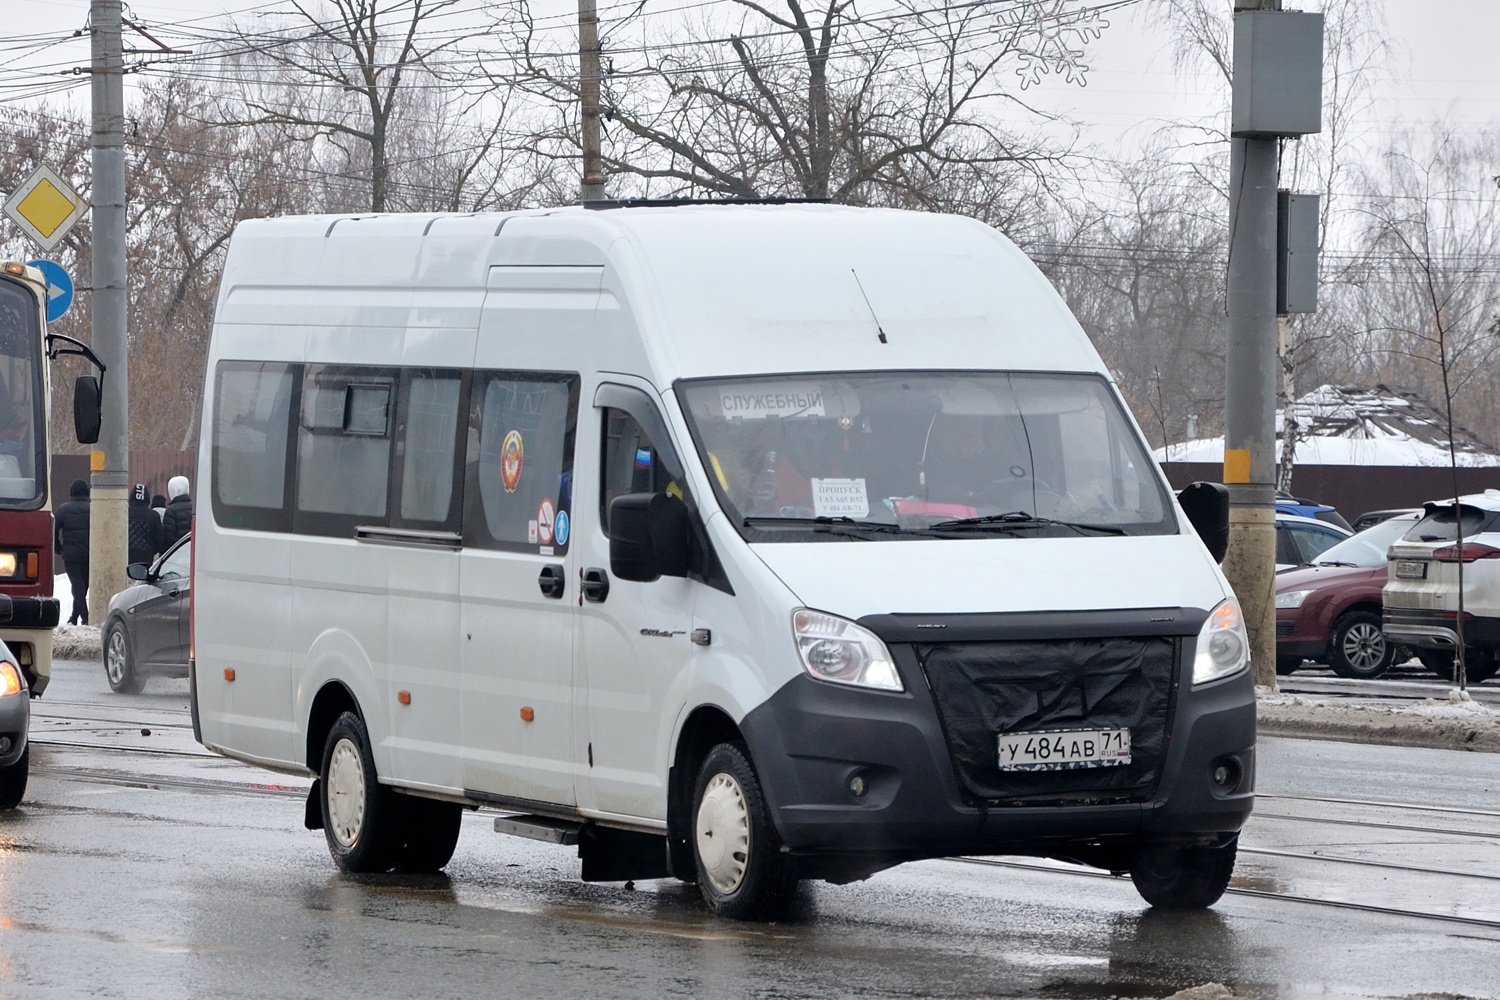 Tula, ГАЗ-A65R52 Next č. У 484 АВ 71